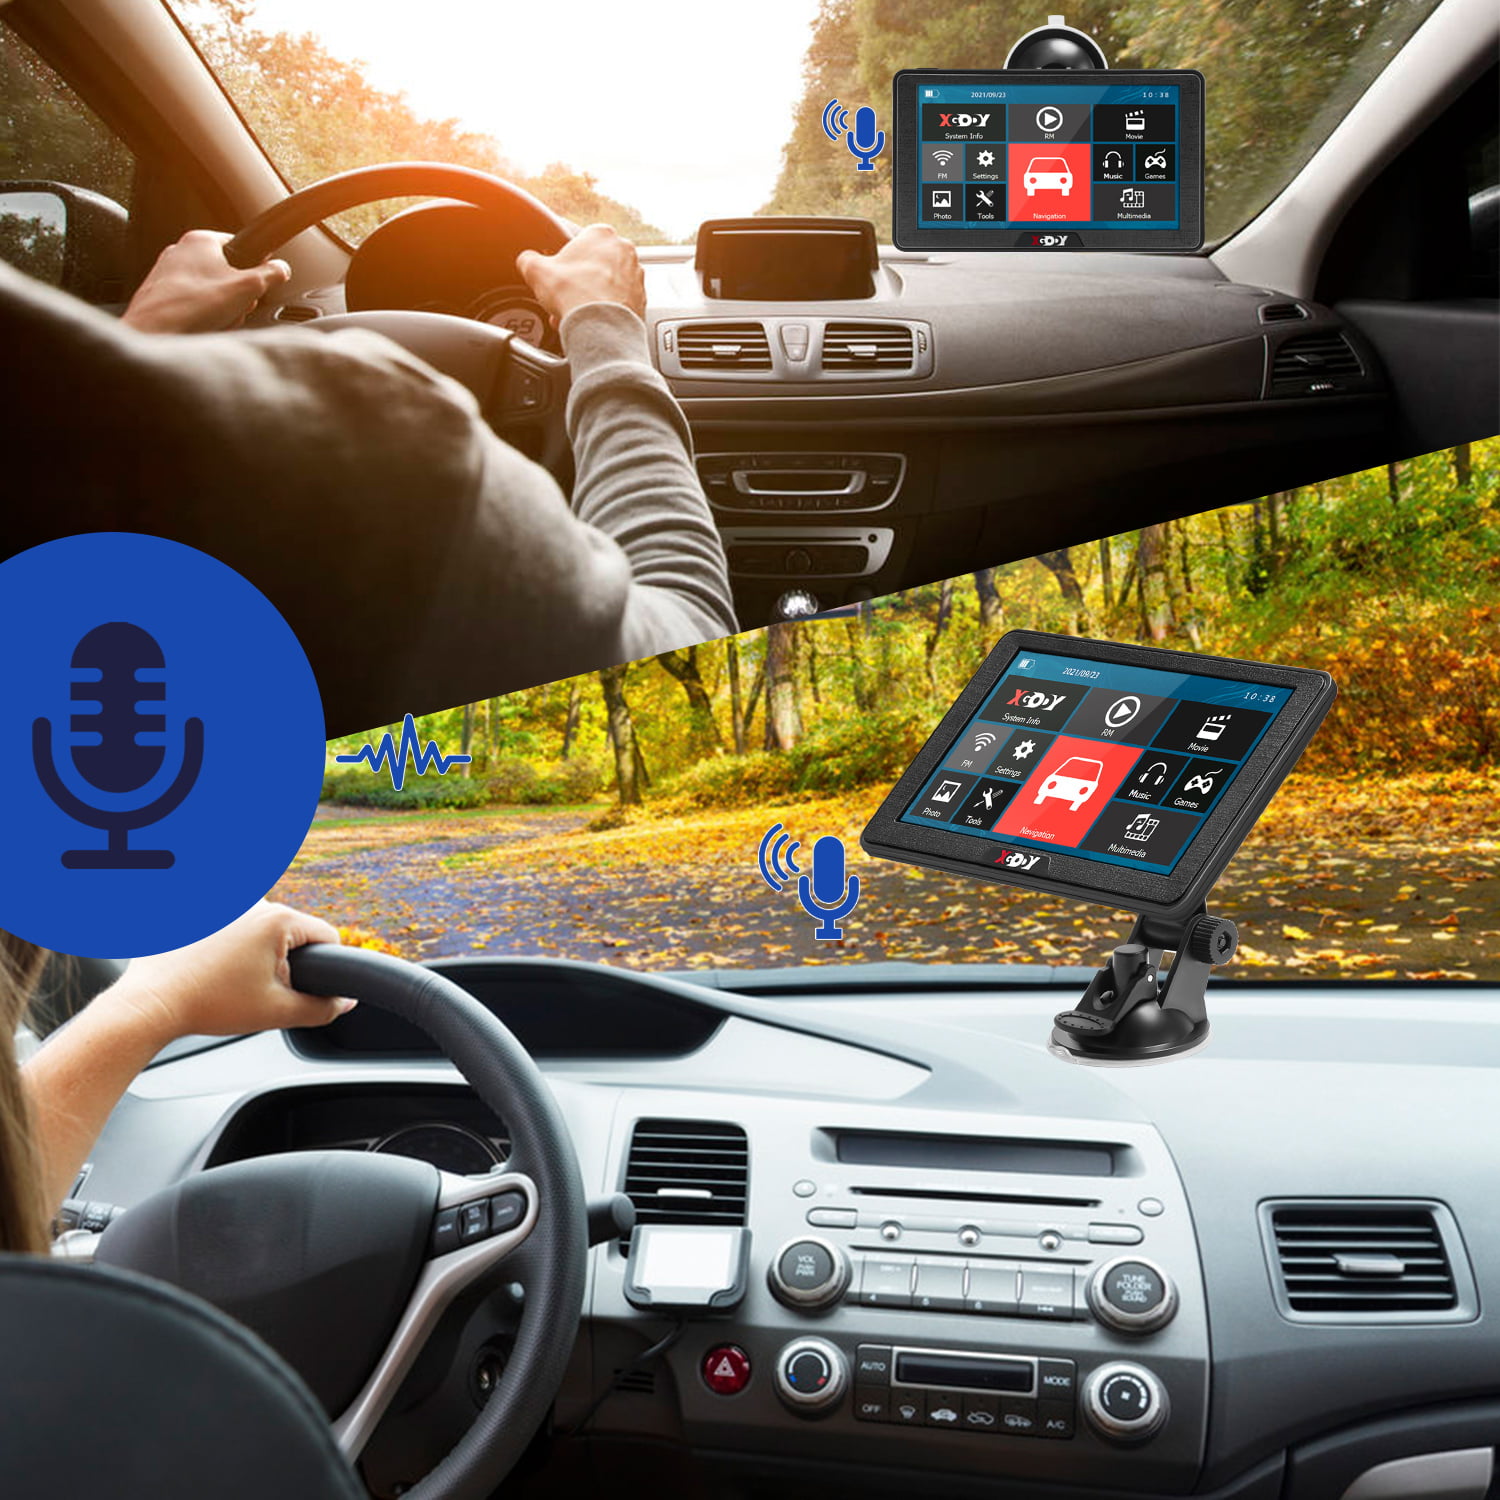 Xgody 712 Bluetooth Truck sistema di navigazione GPS per auto touchscreen capacitivo 17,8 cm 8 GB ROM navigatore satellitare con mappe a vita Spoken Turn-by-Turn direzioni 